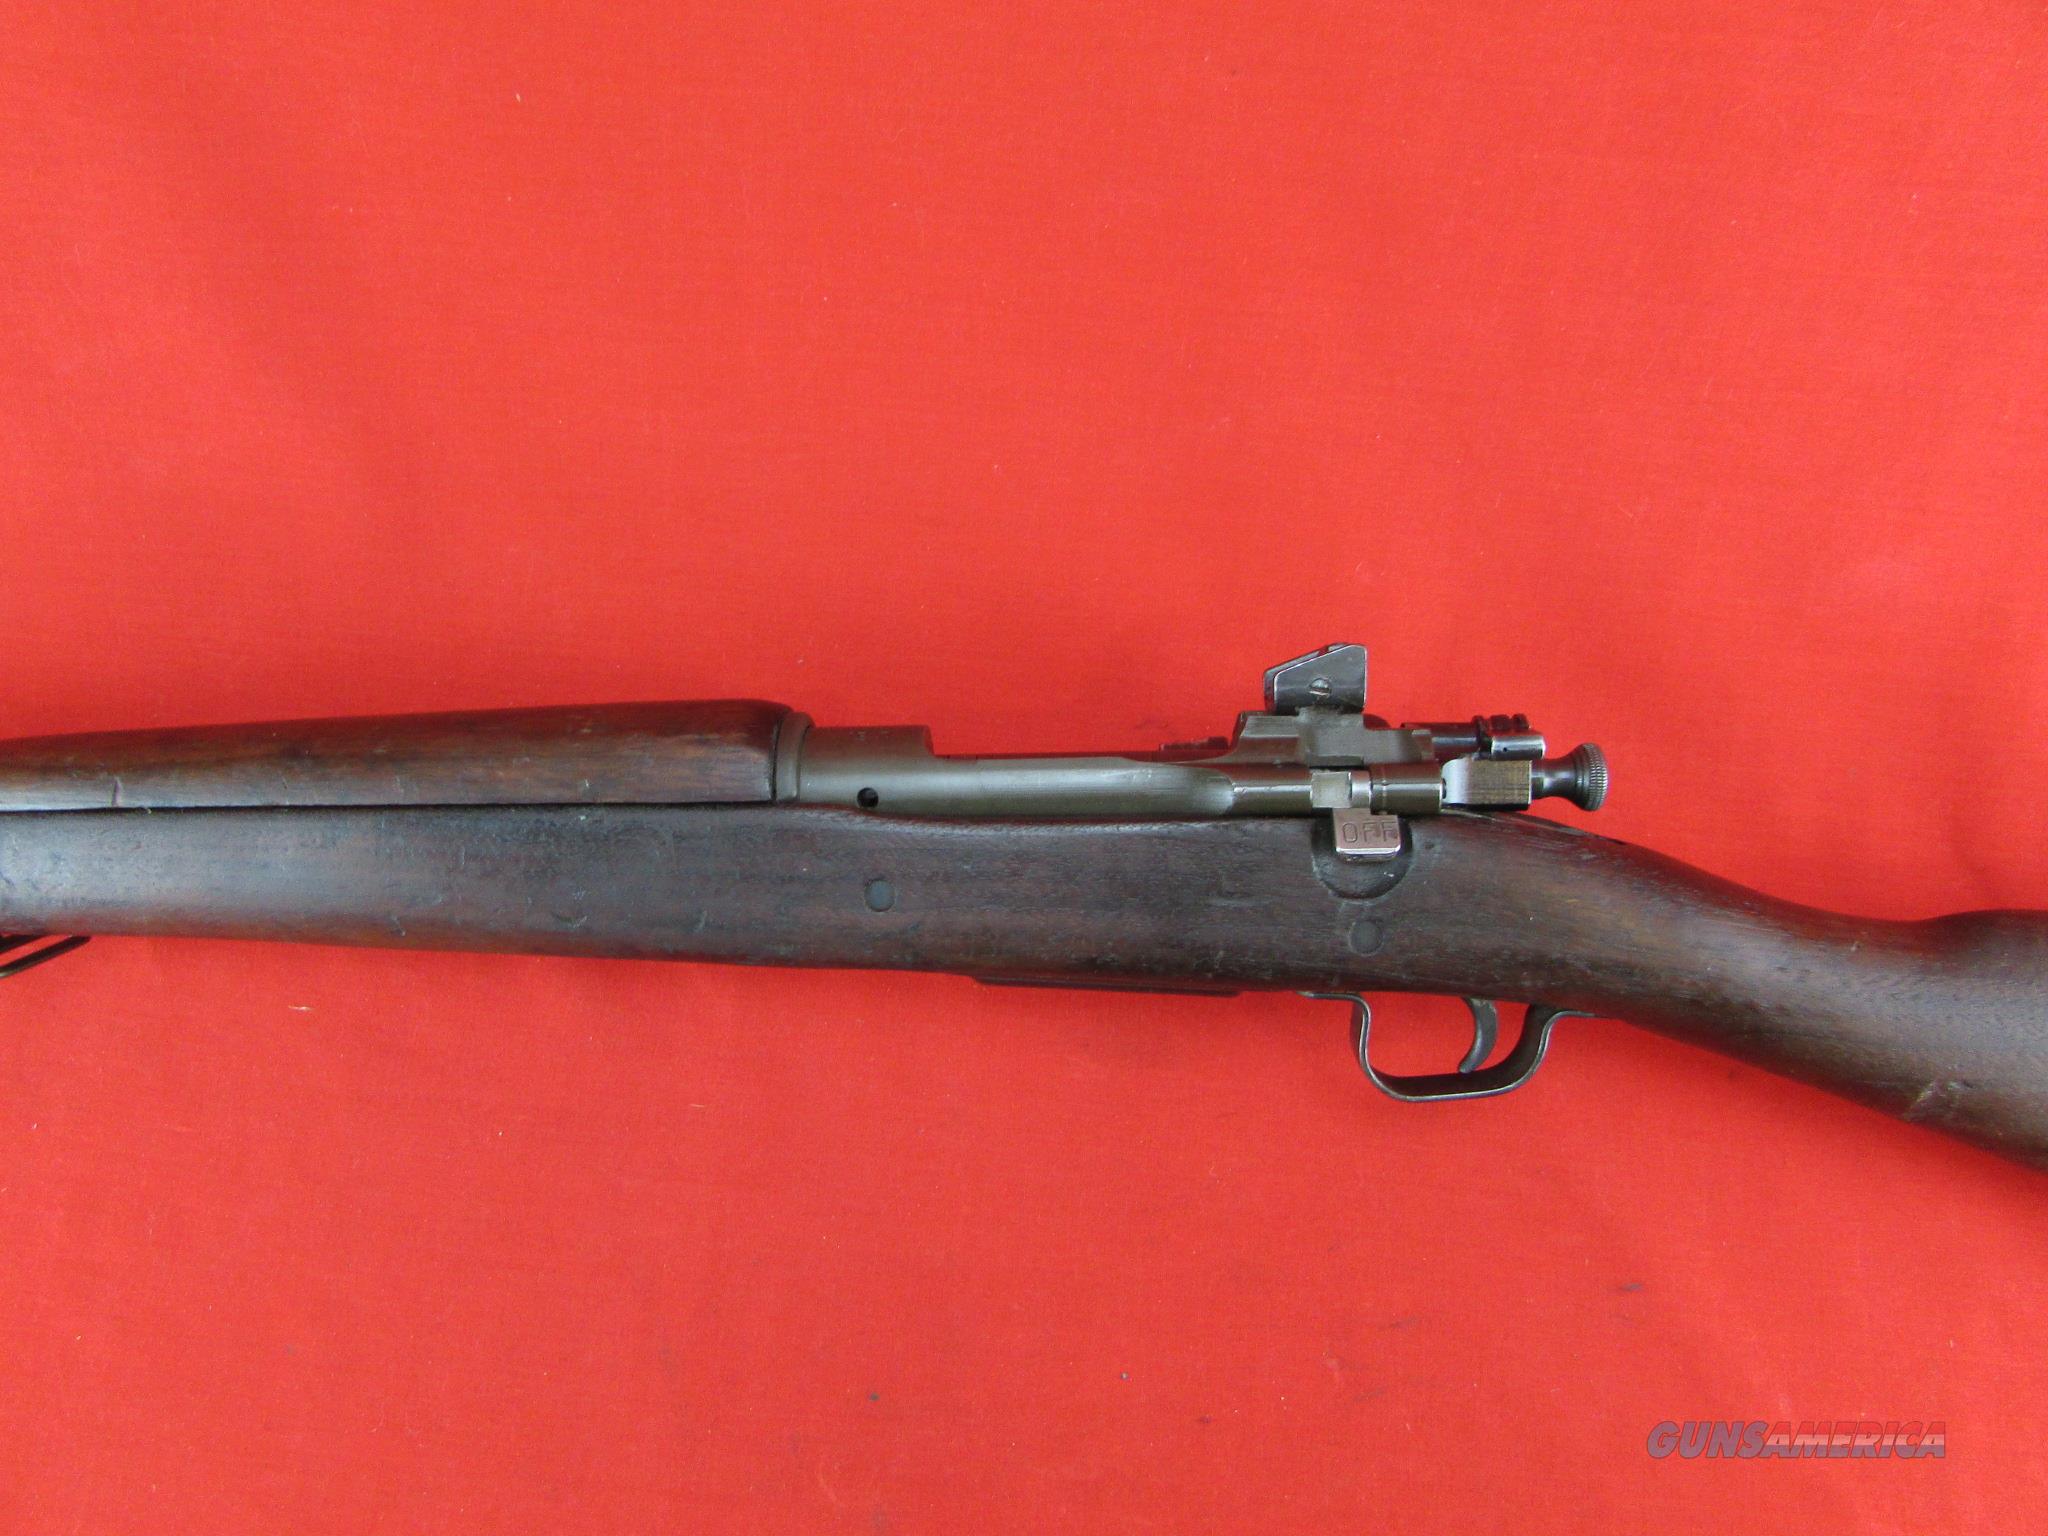 WW2 WWII Remington 1903A3 w/ Correc... for sale at Gunsamerica.com ...